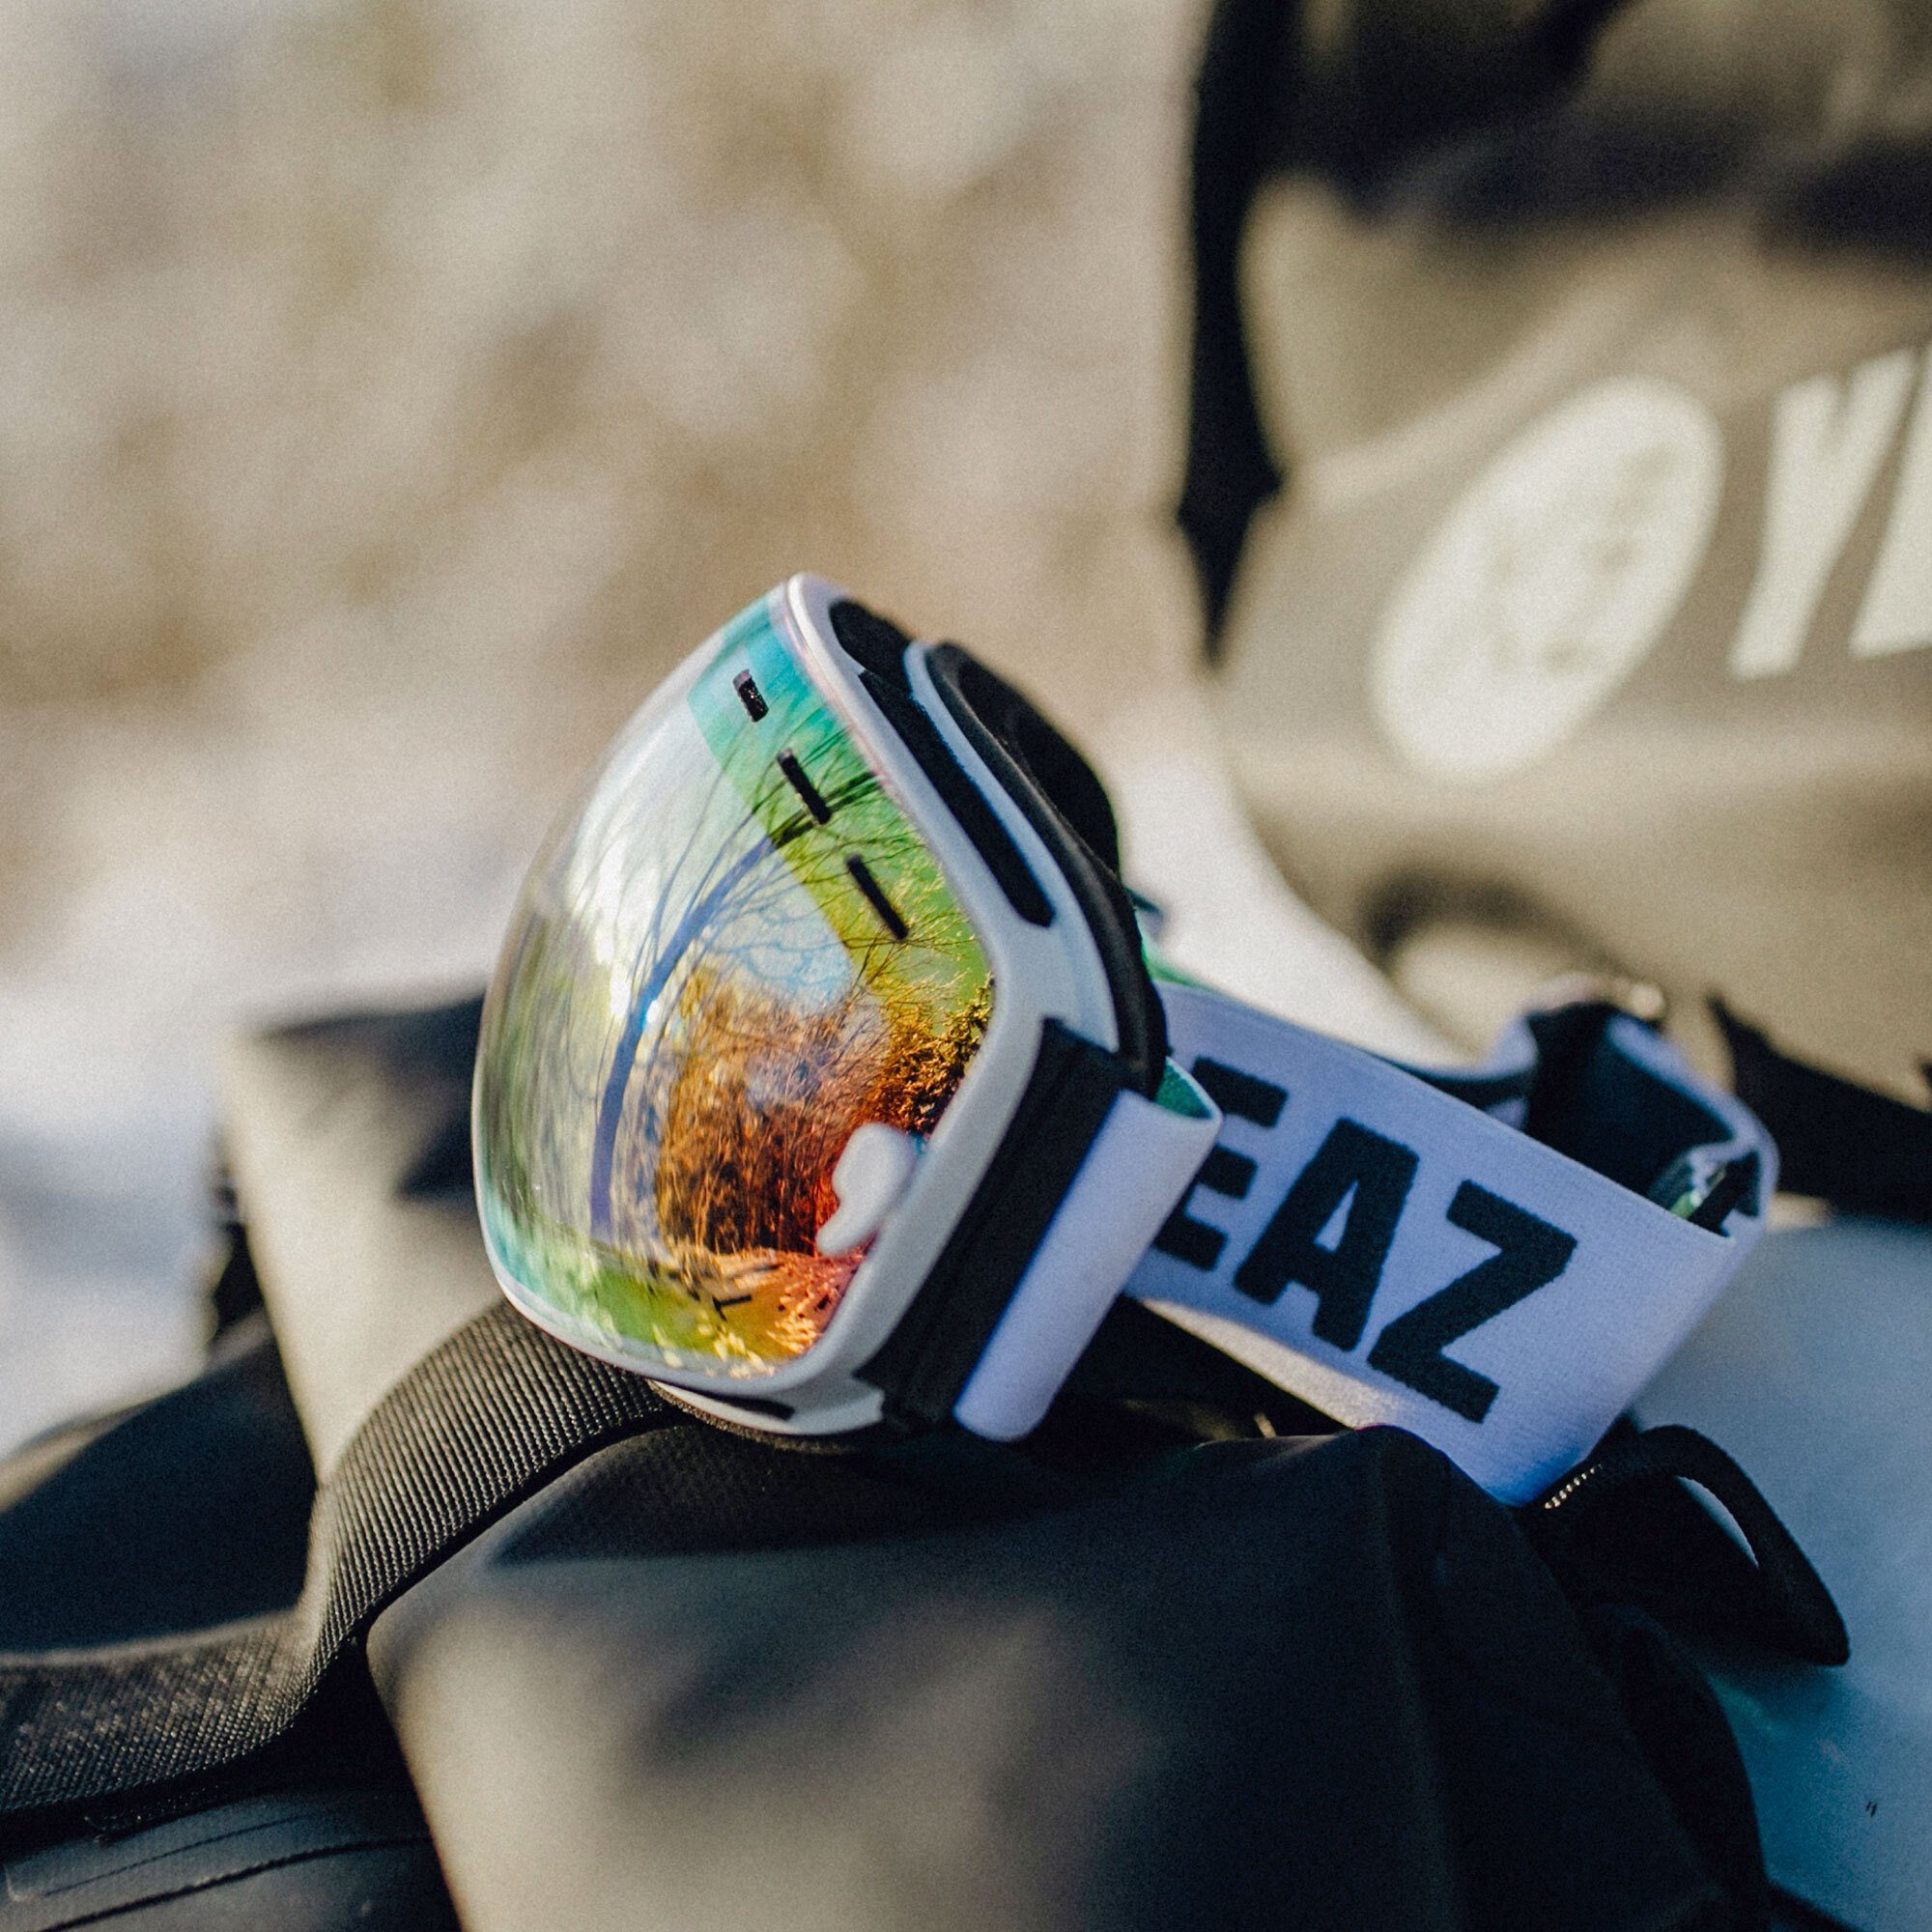 YEAZ Skibrille und Jugendliche XTRM-SUMMIT, Snowboardbrille für und Erwachsene Premium-Ski